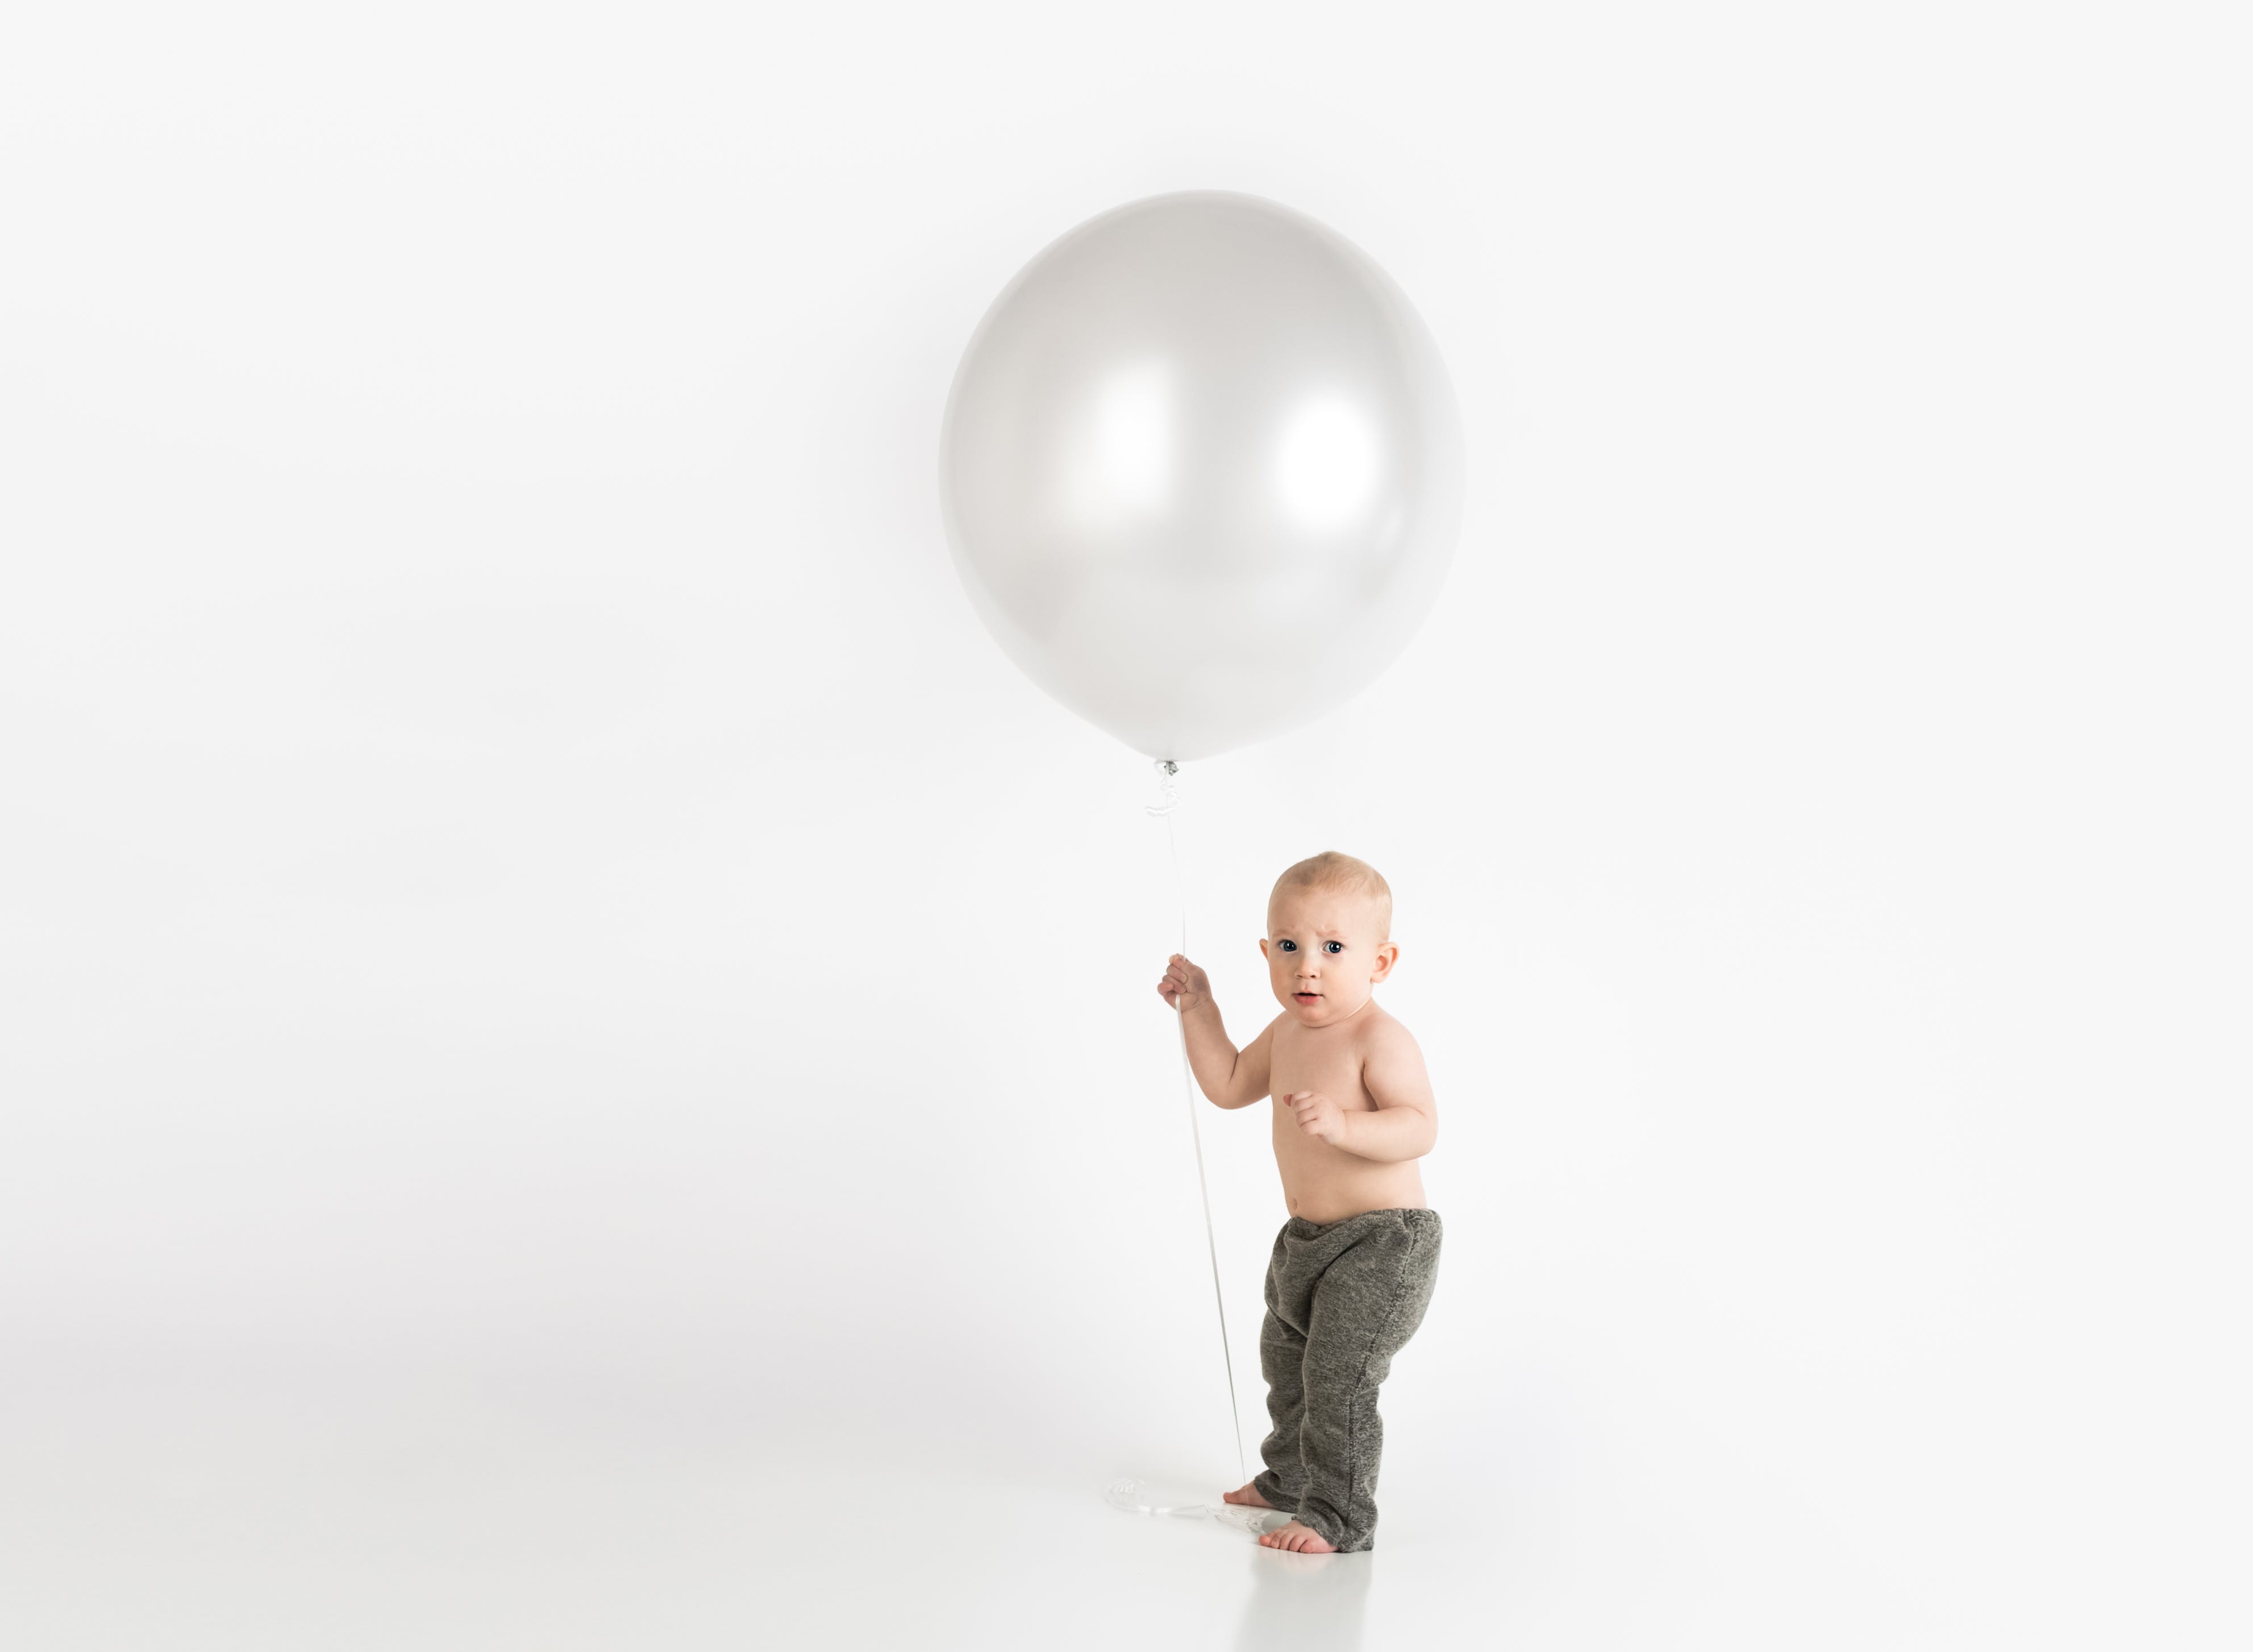 Tonen Onrustig Kudde Baby In Zwarte Broek Met Witte Ballon Terwijl Hij Staat · Gratis stockfoto